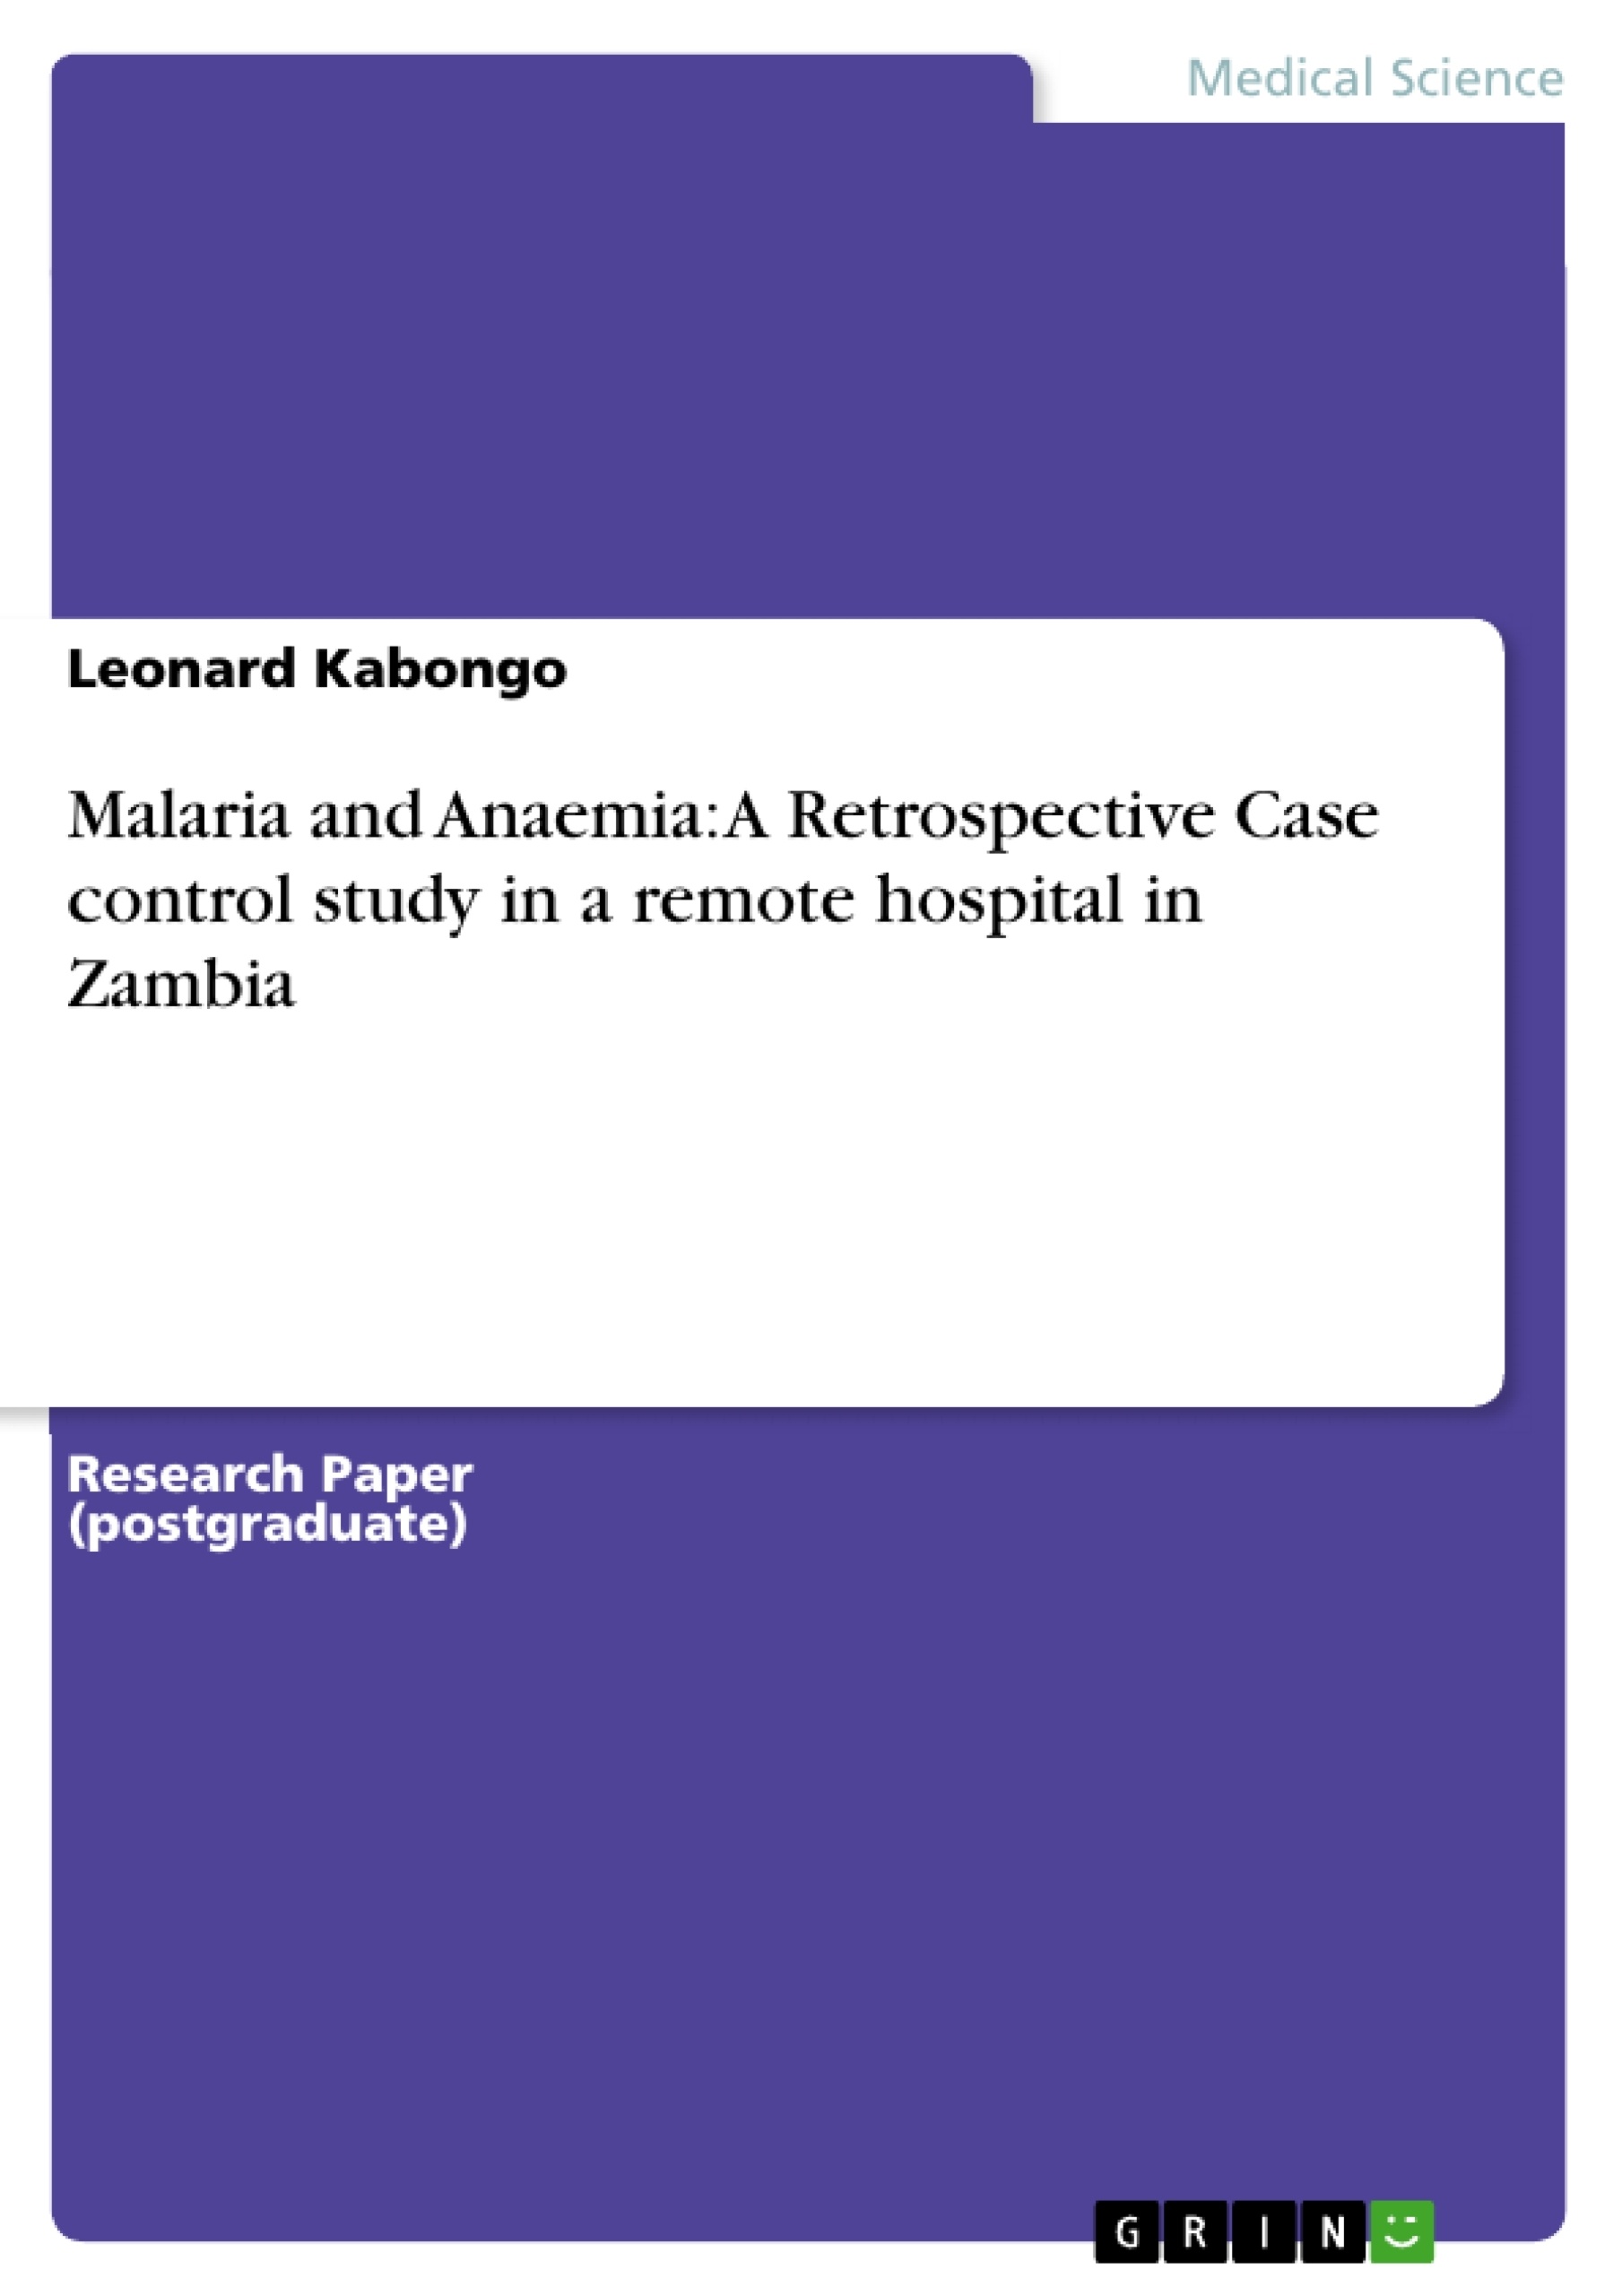 Titre: Malaria and Anaemia: A Retrospective Case control study in a remote hospital in Zambia